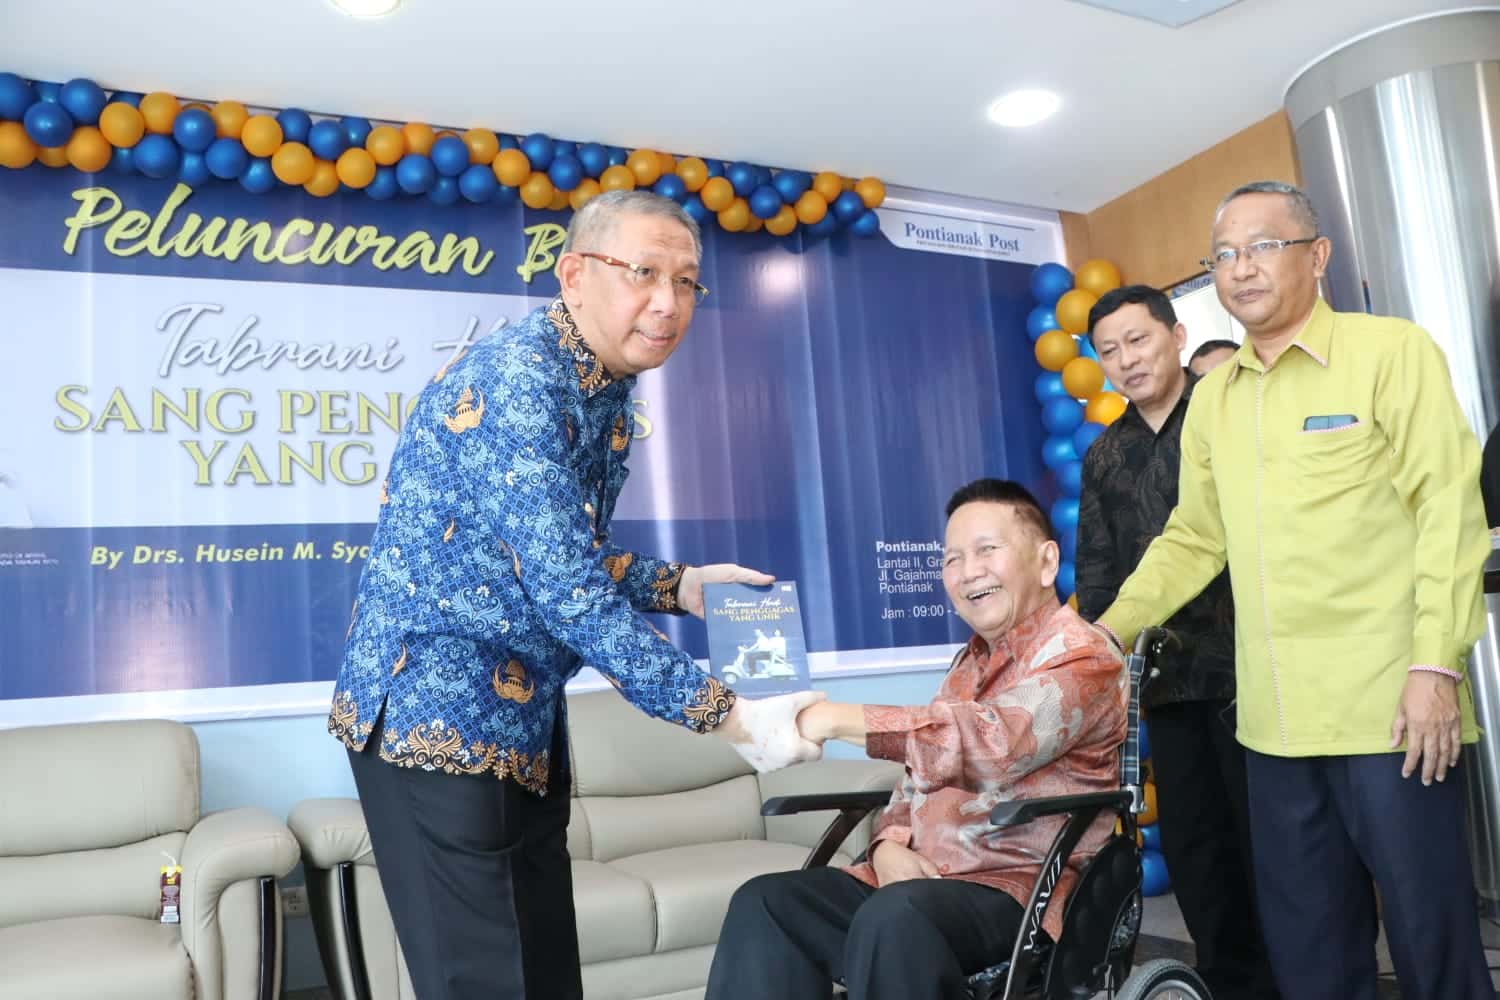 Gubernur Kalimantan Barat (Kalbar), Sutarmidji menerima hadiah buku berjudul "Tabrani Hadi Sang Penggagas Yang Unik" dari Tabrani Hadi, saat peluncuran buku tersebut di Kantor Graha Pena Pontianak Post, Rabu (17/05/2023) pagi. (Foto: Jauhari)